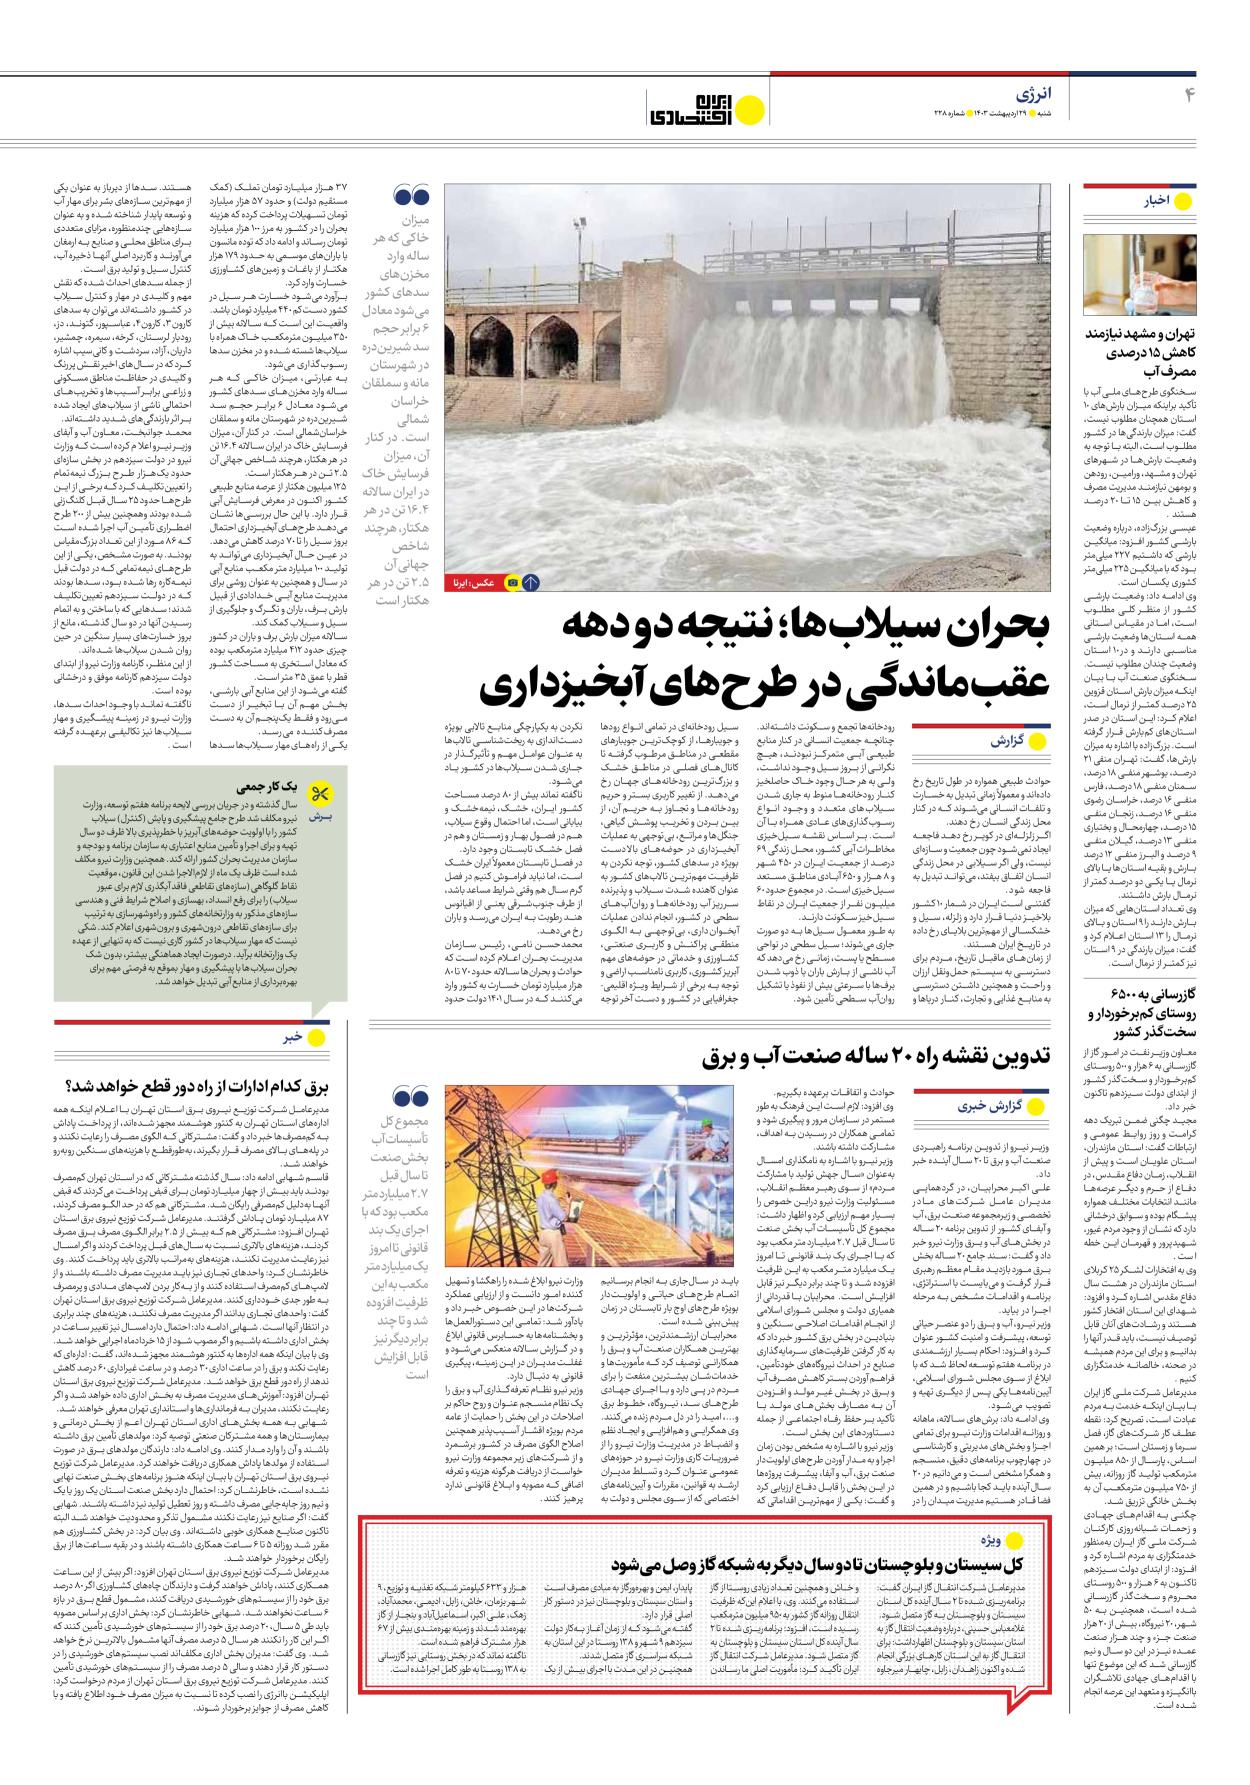 روزنامه ایران اقتصادی - شماره دویست و بیست و هشت - ۲۹ اردیبهشت ۱۴۰۳ - صفحه ۴